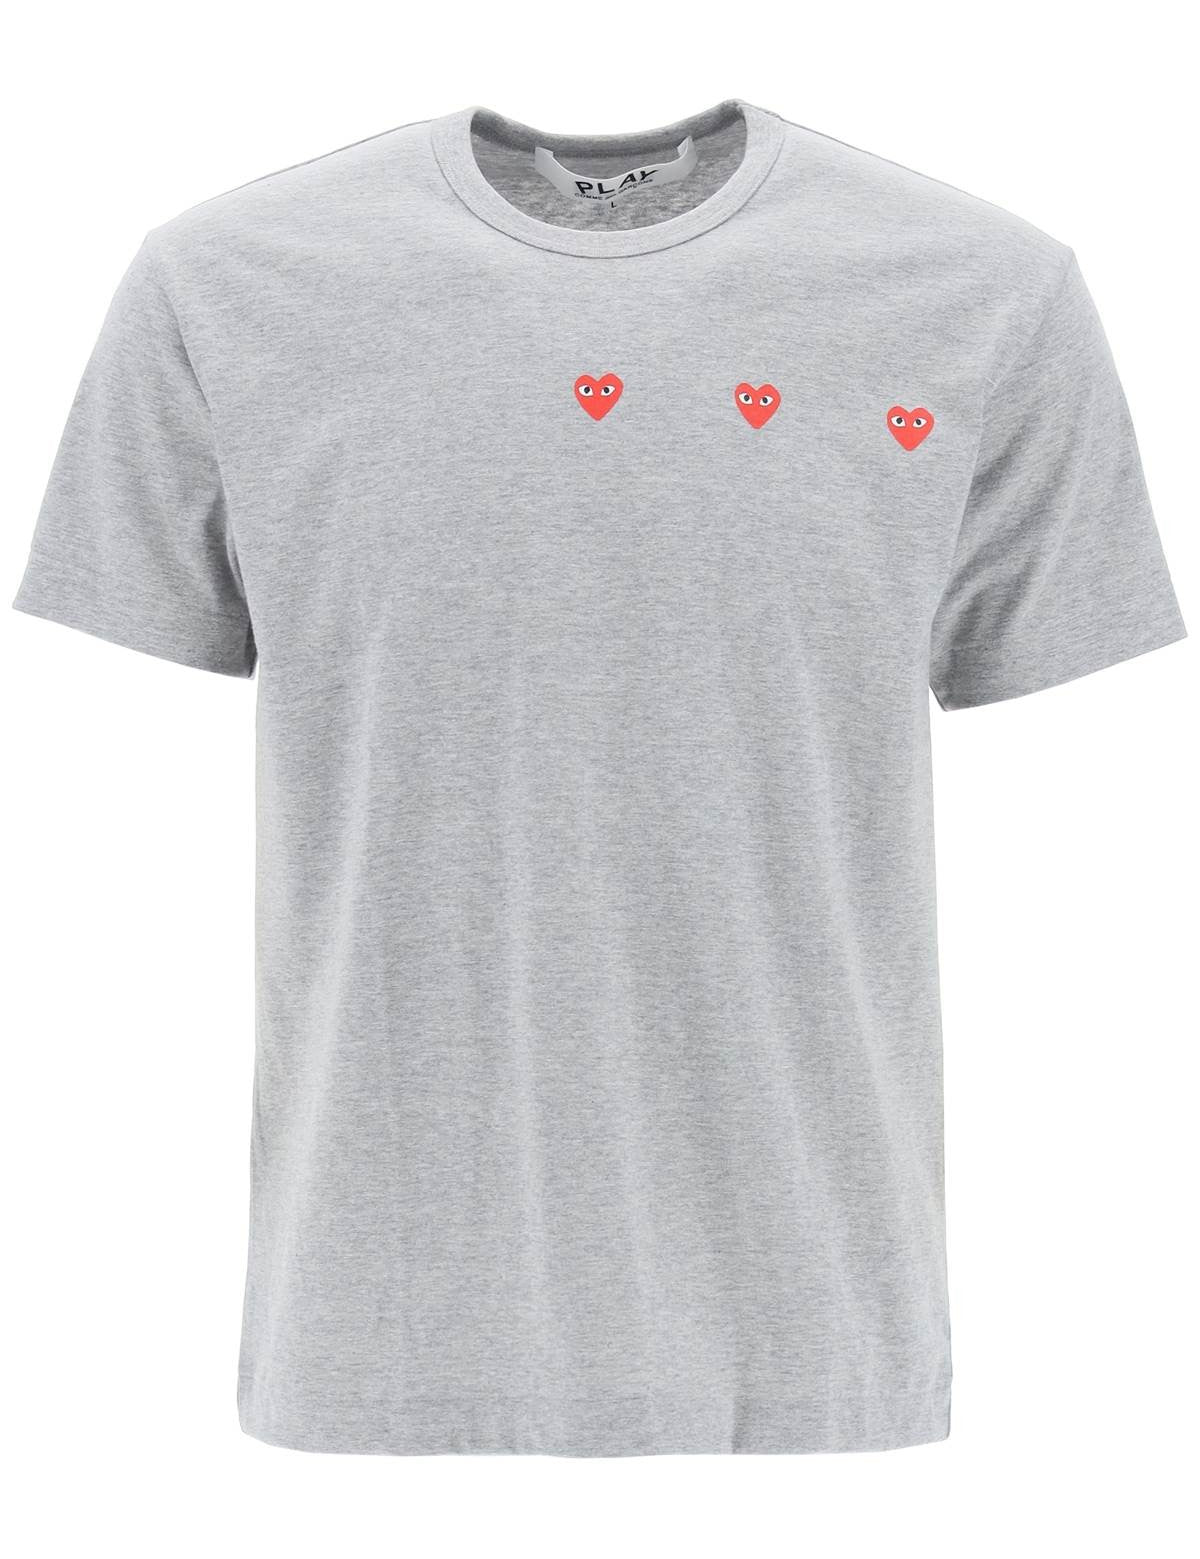 round-neck-t-shirt-with-heart_2276af5b-eb45-412b-968b-028731b7de02.jpg